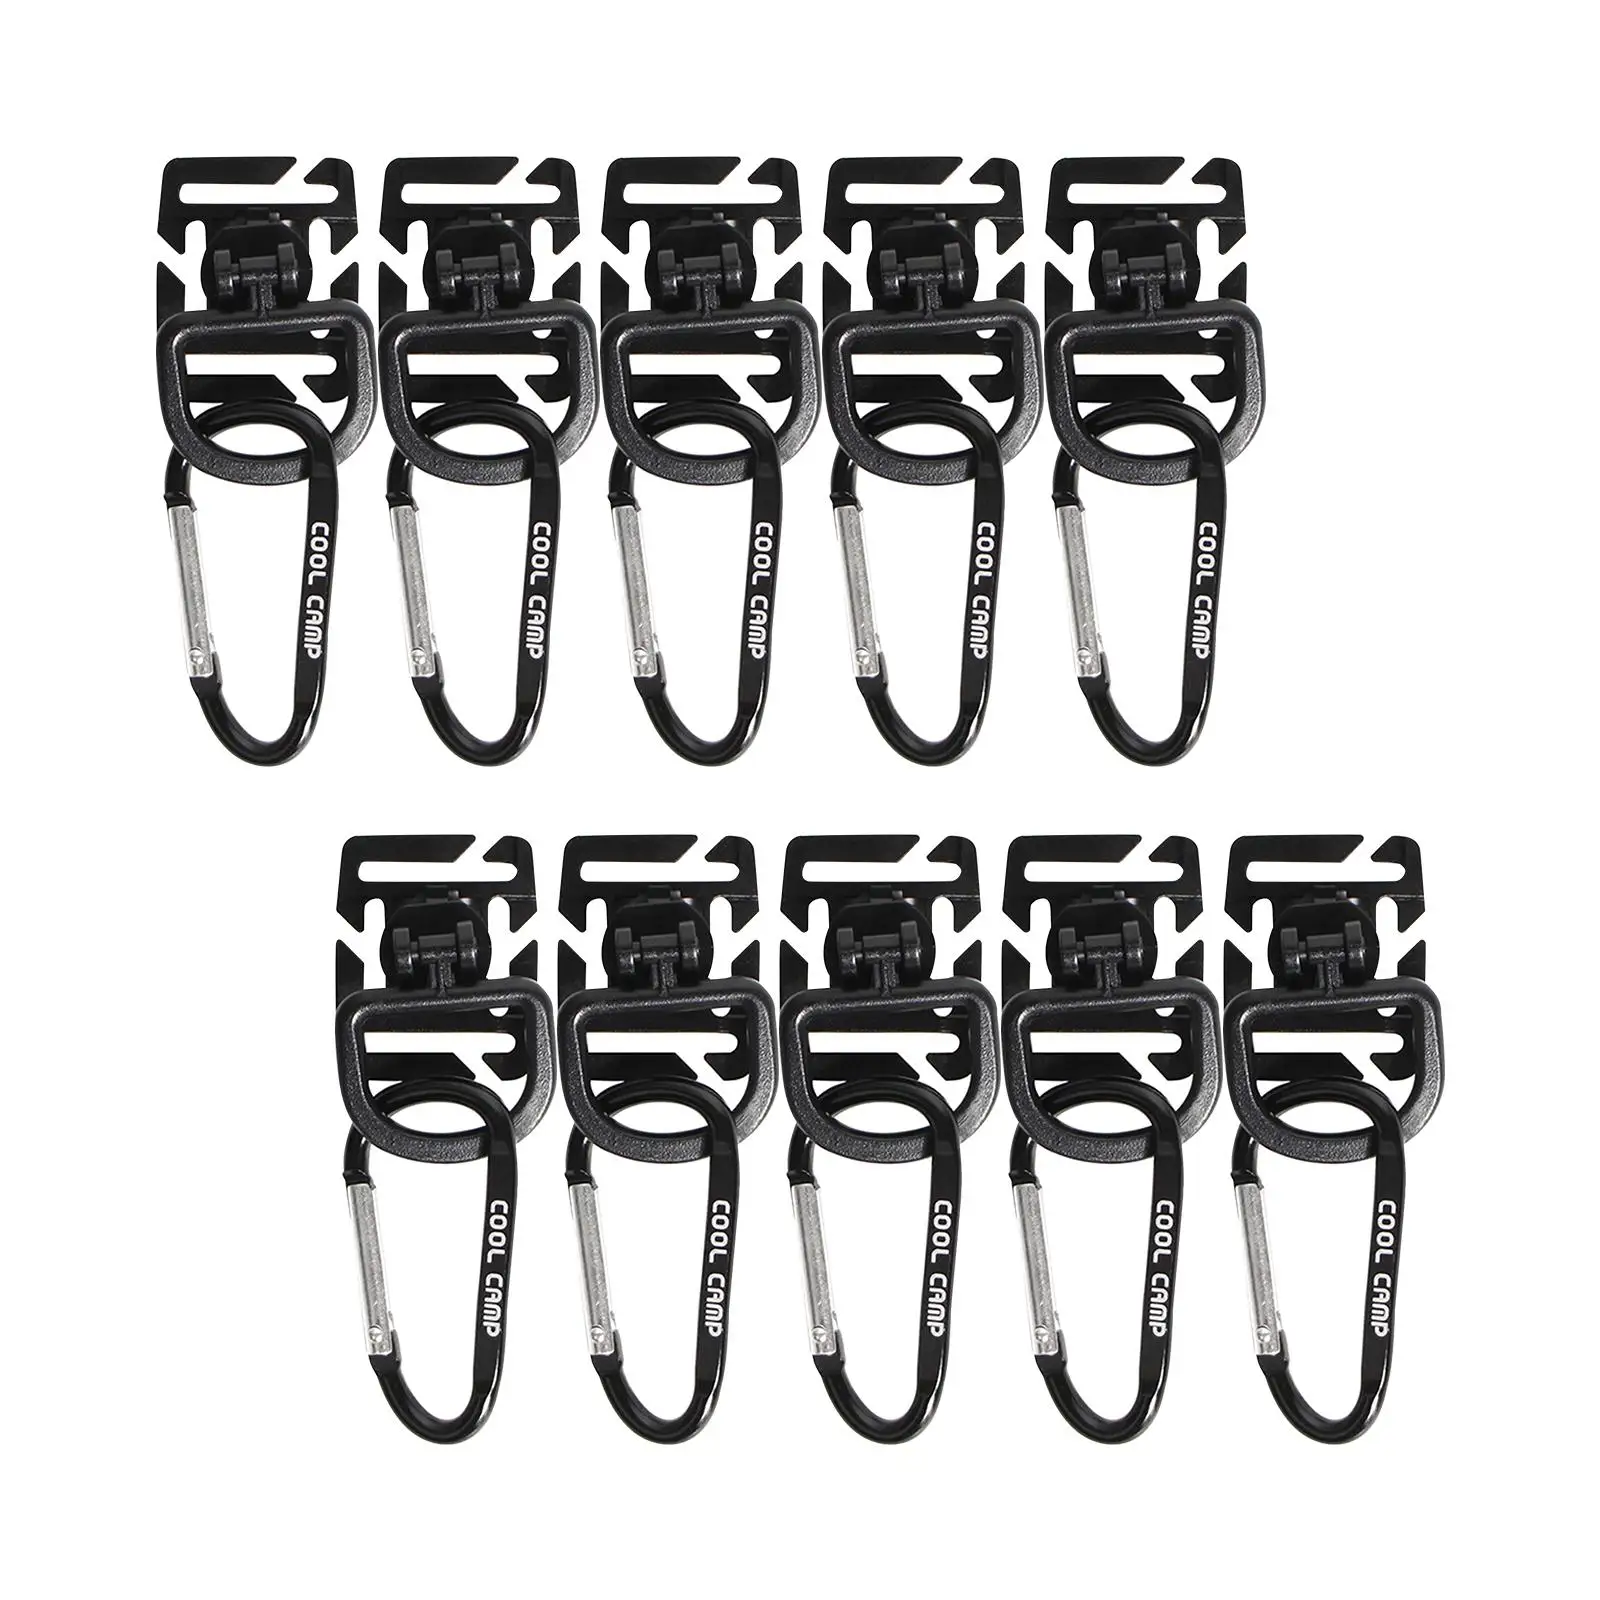 10x Tent Clips Hook Reusable Multifunctional Windproof Lock Grip Hangers for